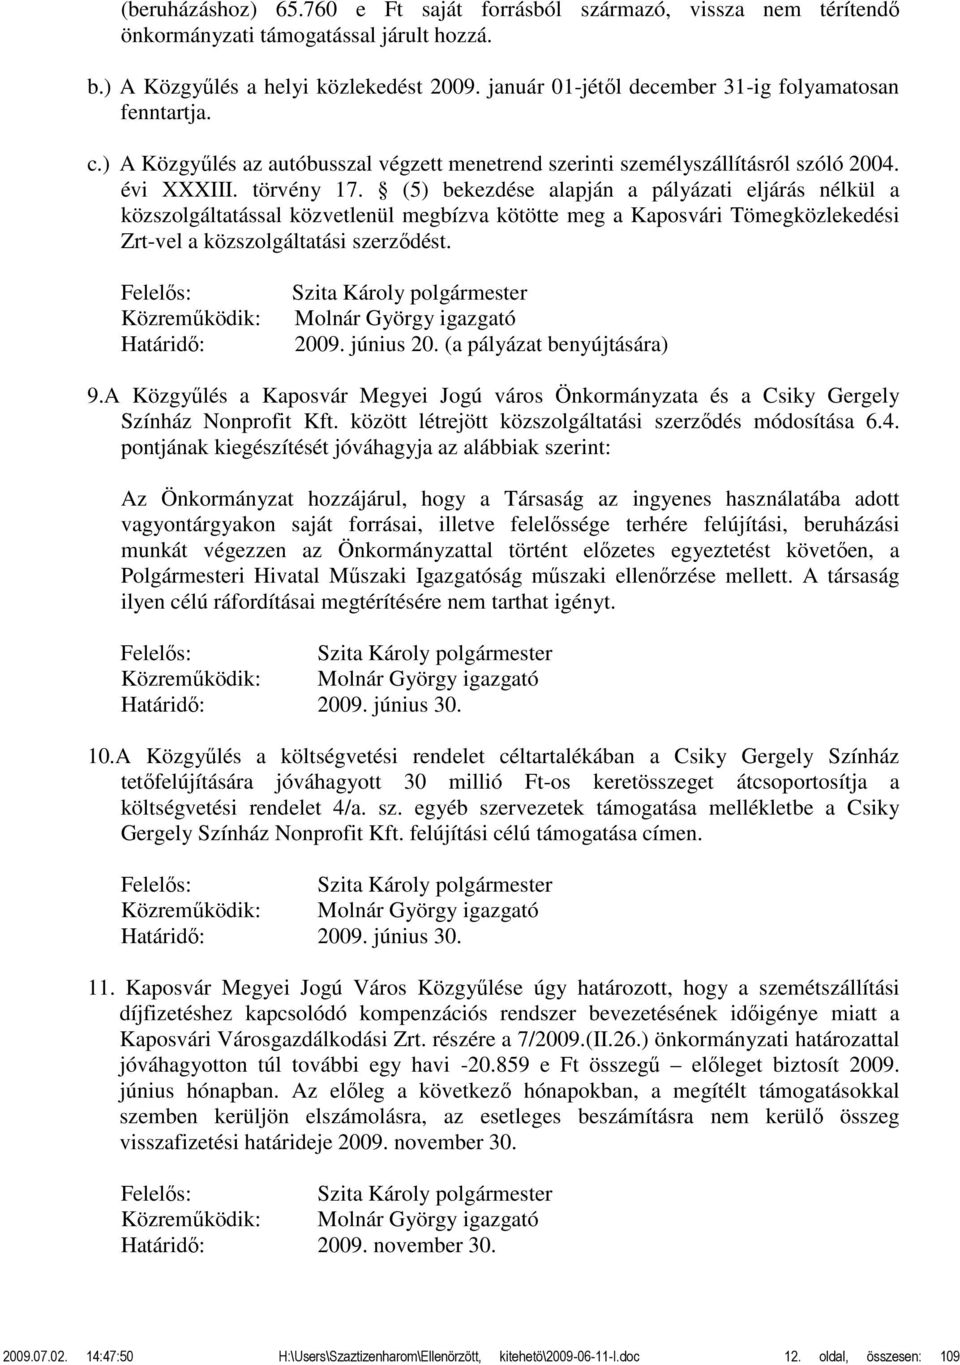 (5) bekezdése alapján a pályázati eljárás nélkül a közszolgáltatással közvetlenül megbízva kötötte meg a Kaposvári Tömegközlekedési Zrt-vel a közszolgáltatási szerződést.